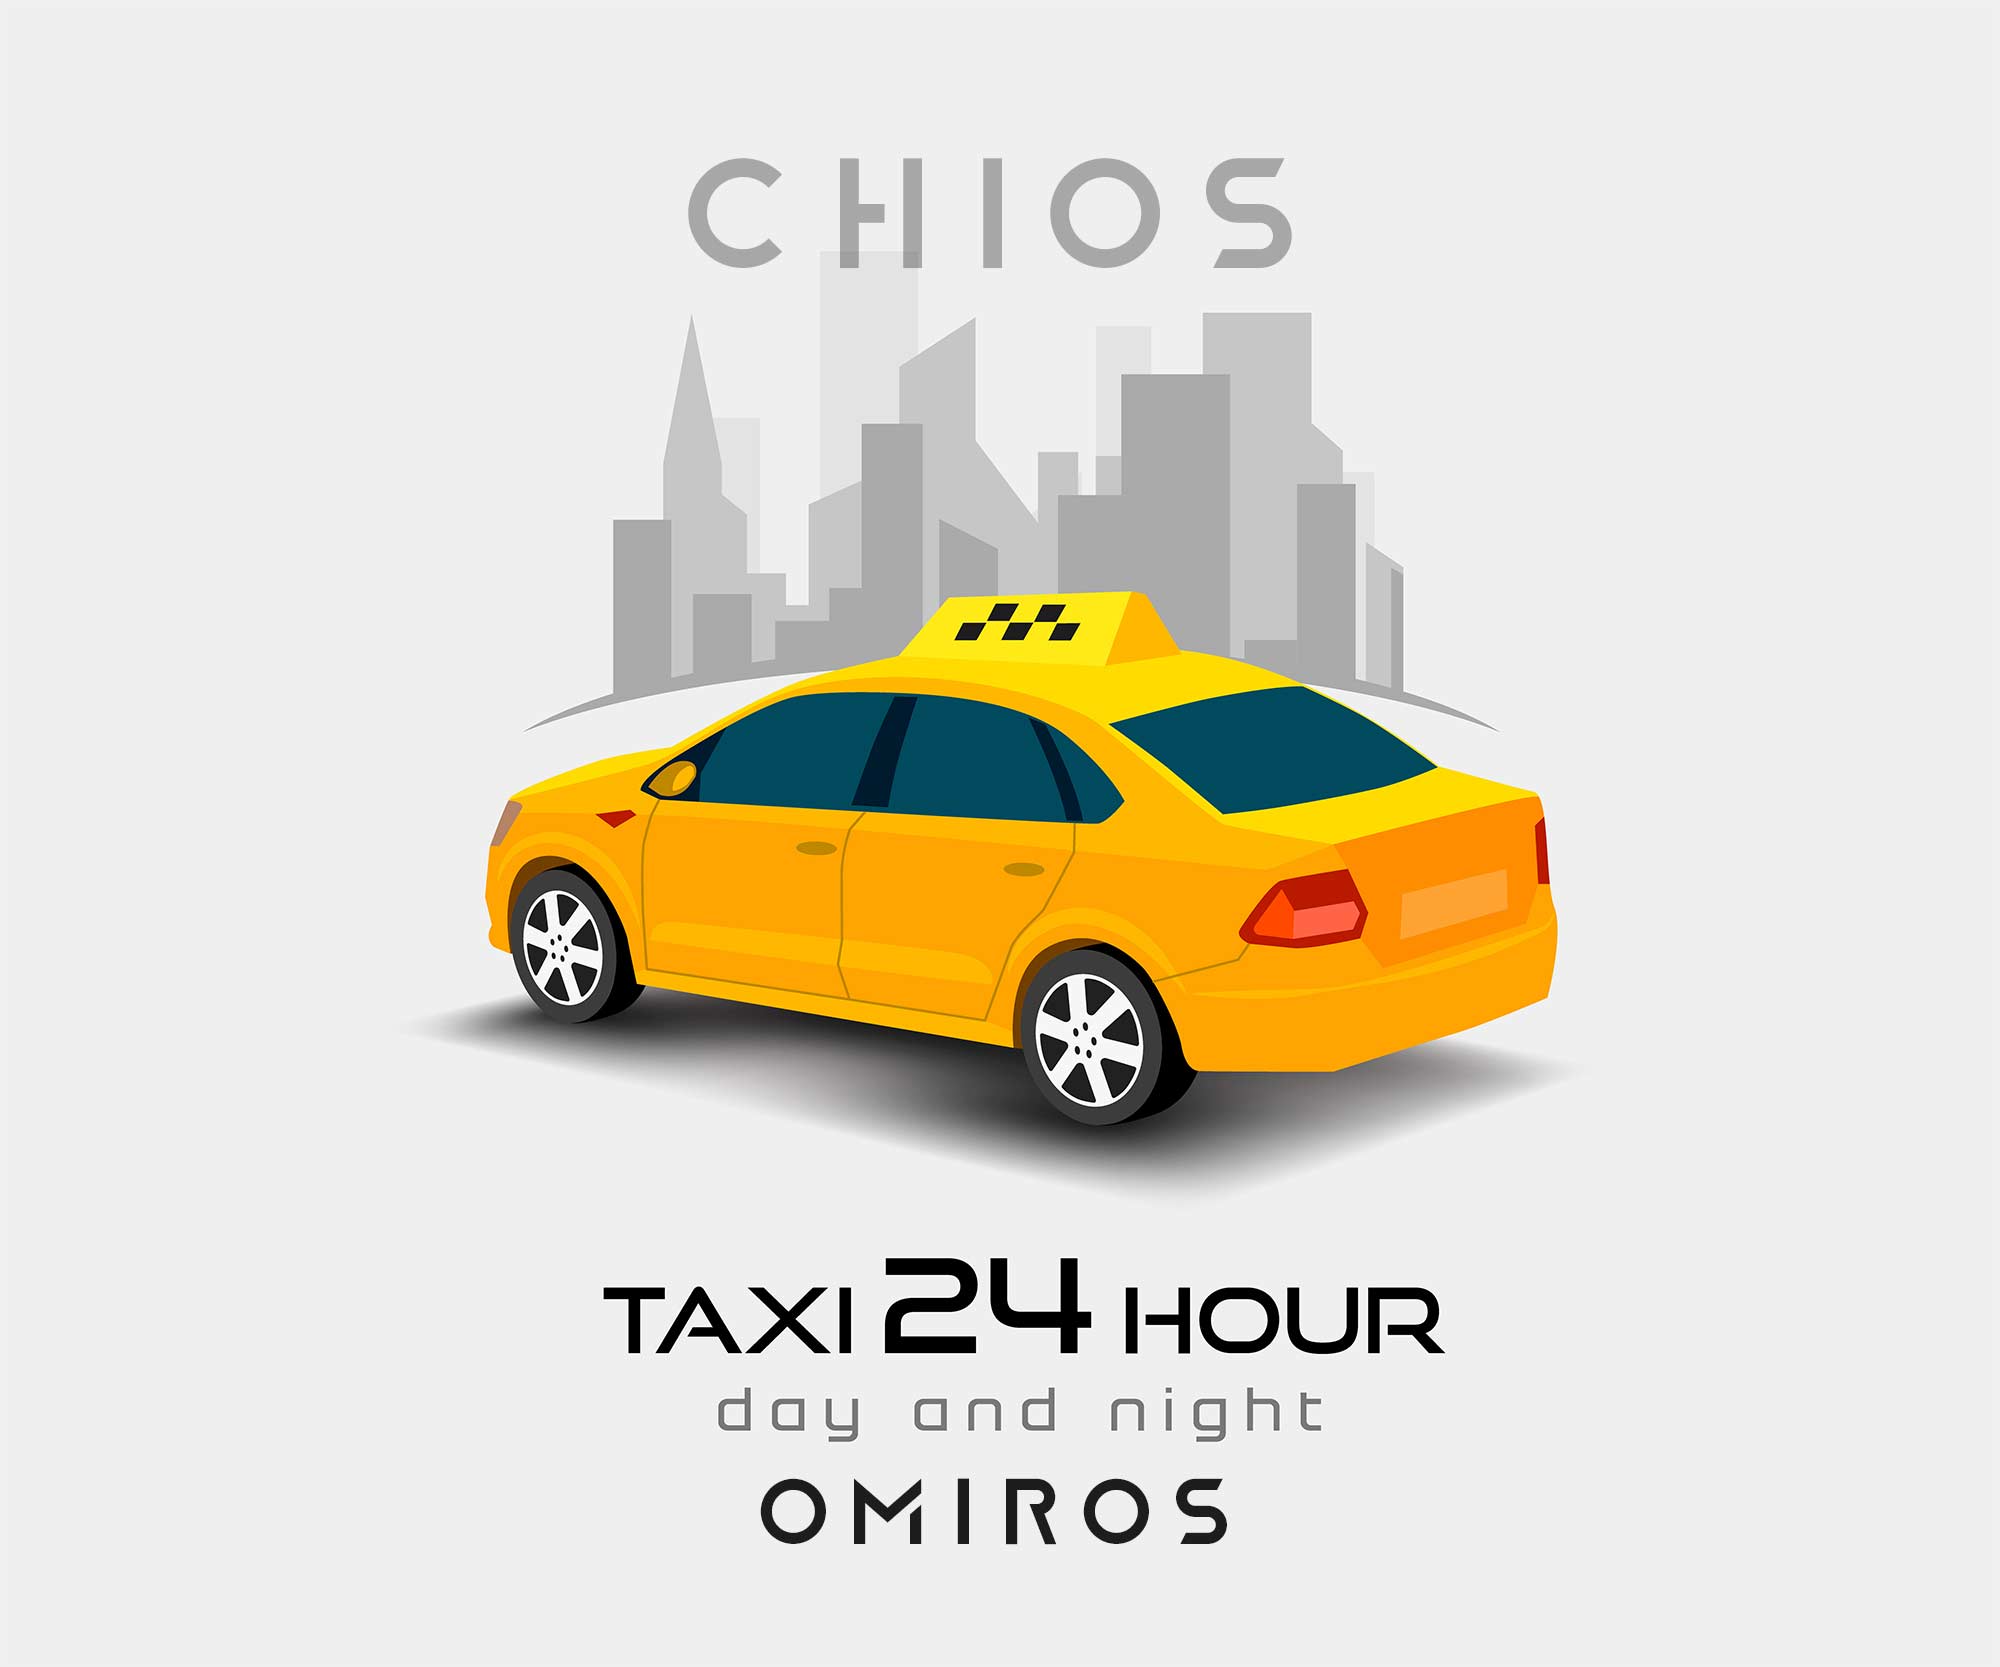 Chios Taxi Fares